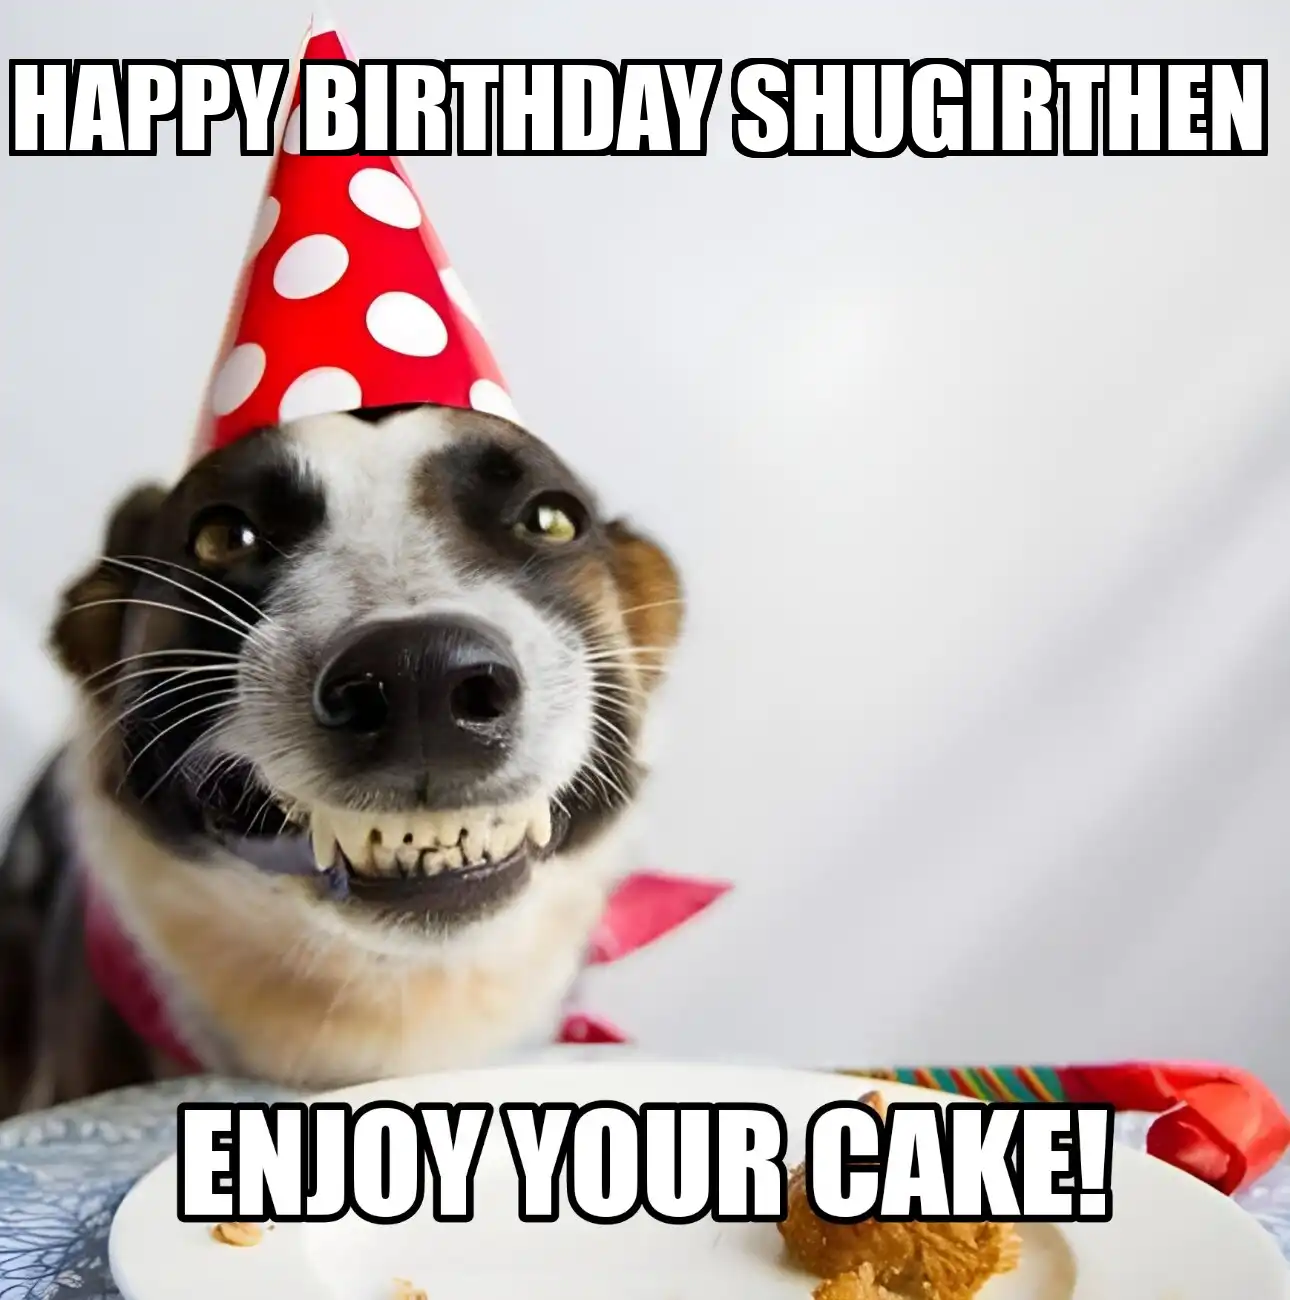 Happy Birthday Shugirthen Enjoy Your Cake Dog Meme